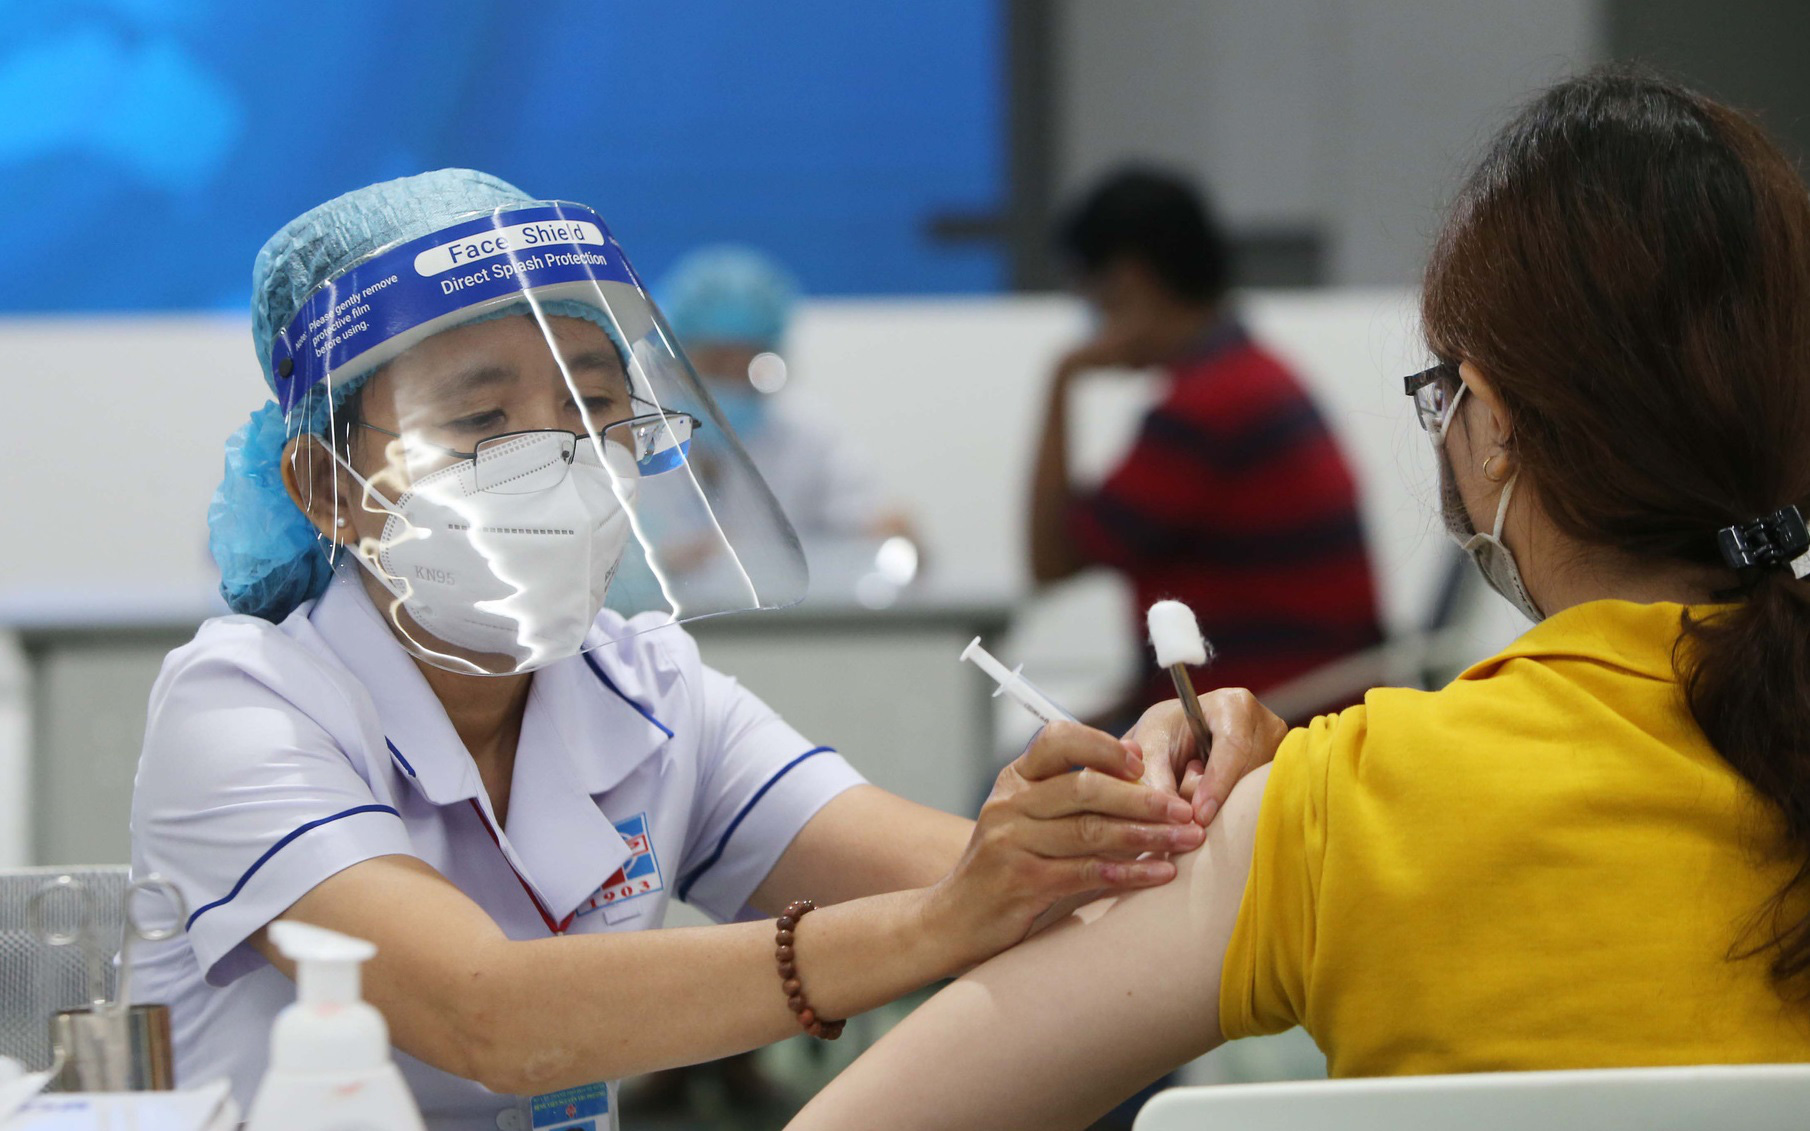 Chiều 27/3: Việt Nam đã tiêm 205 triệu liều vaccine phòng COVID-19; chuẩn bị tiêm cho trẻ từ 5-11 tuổi